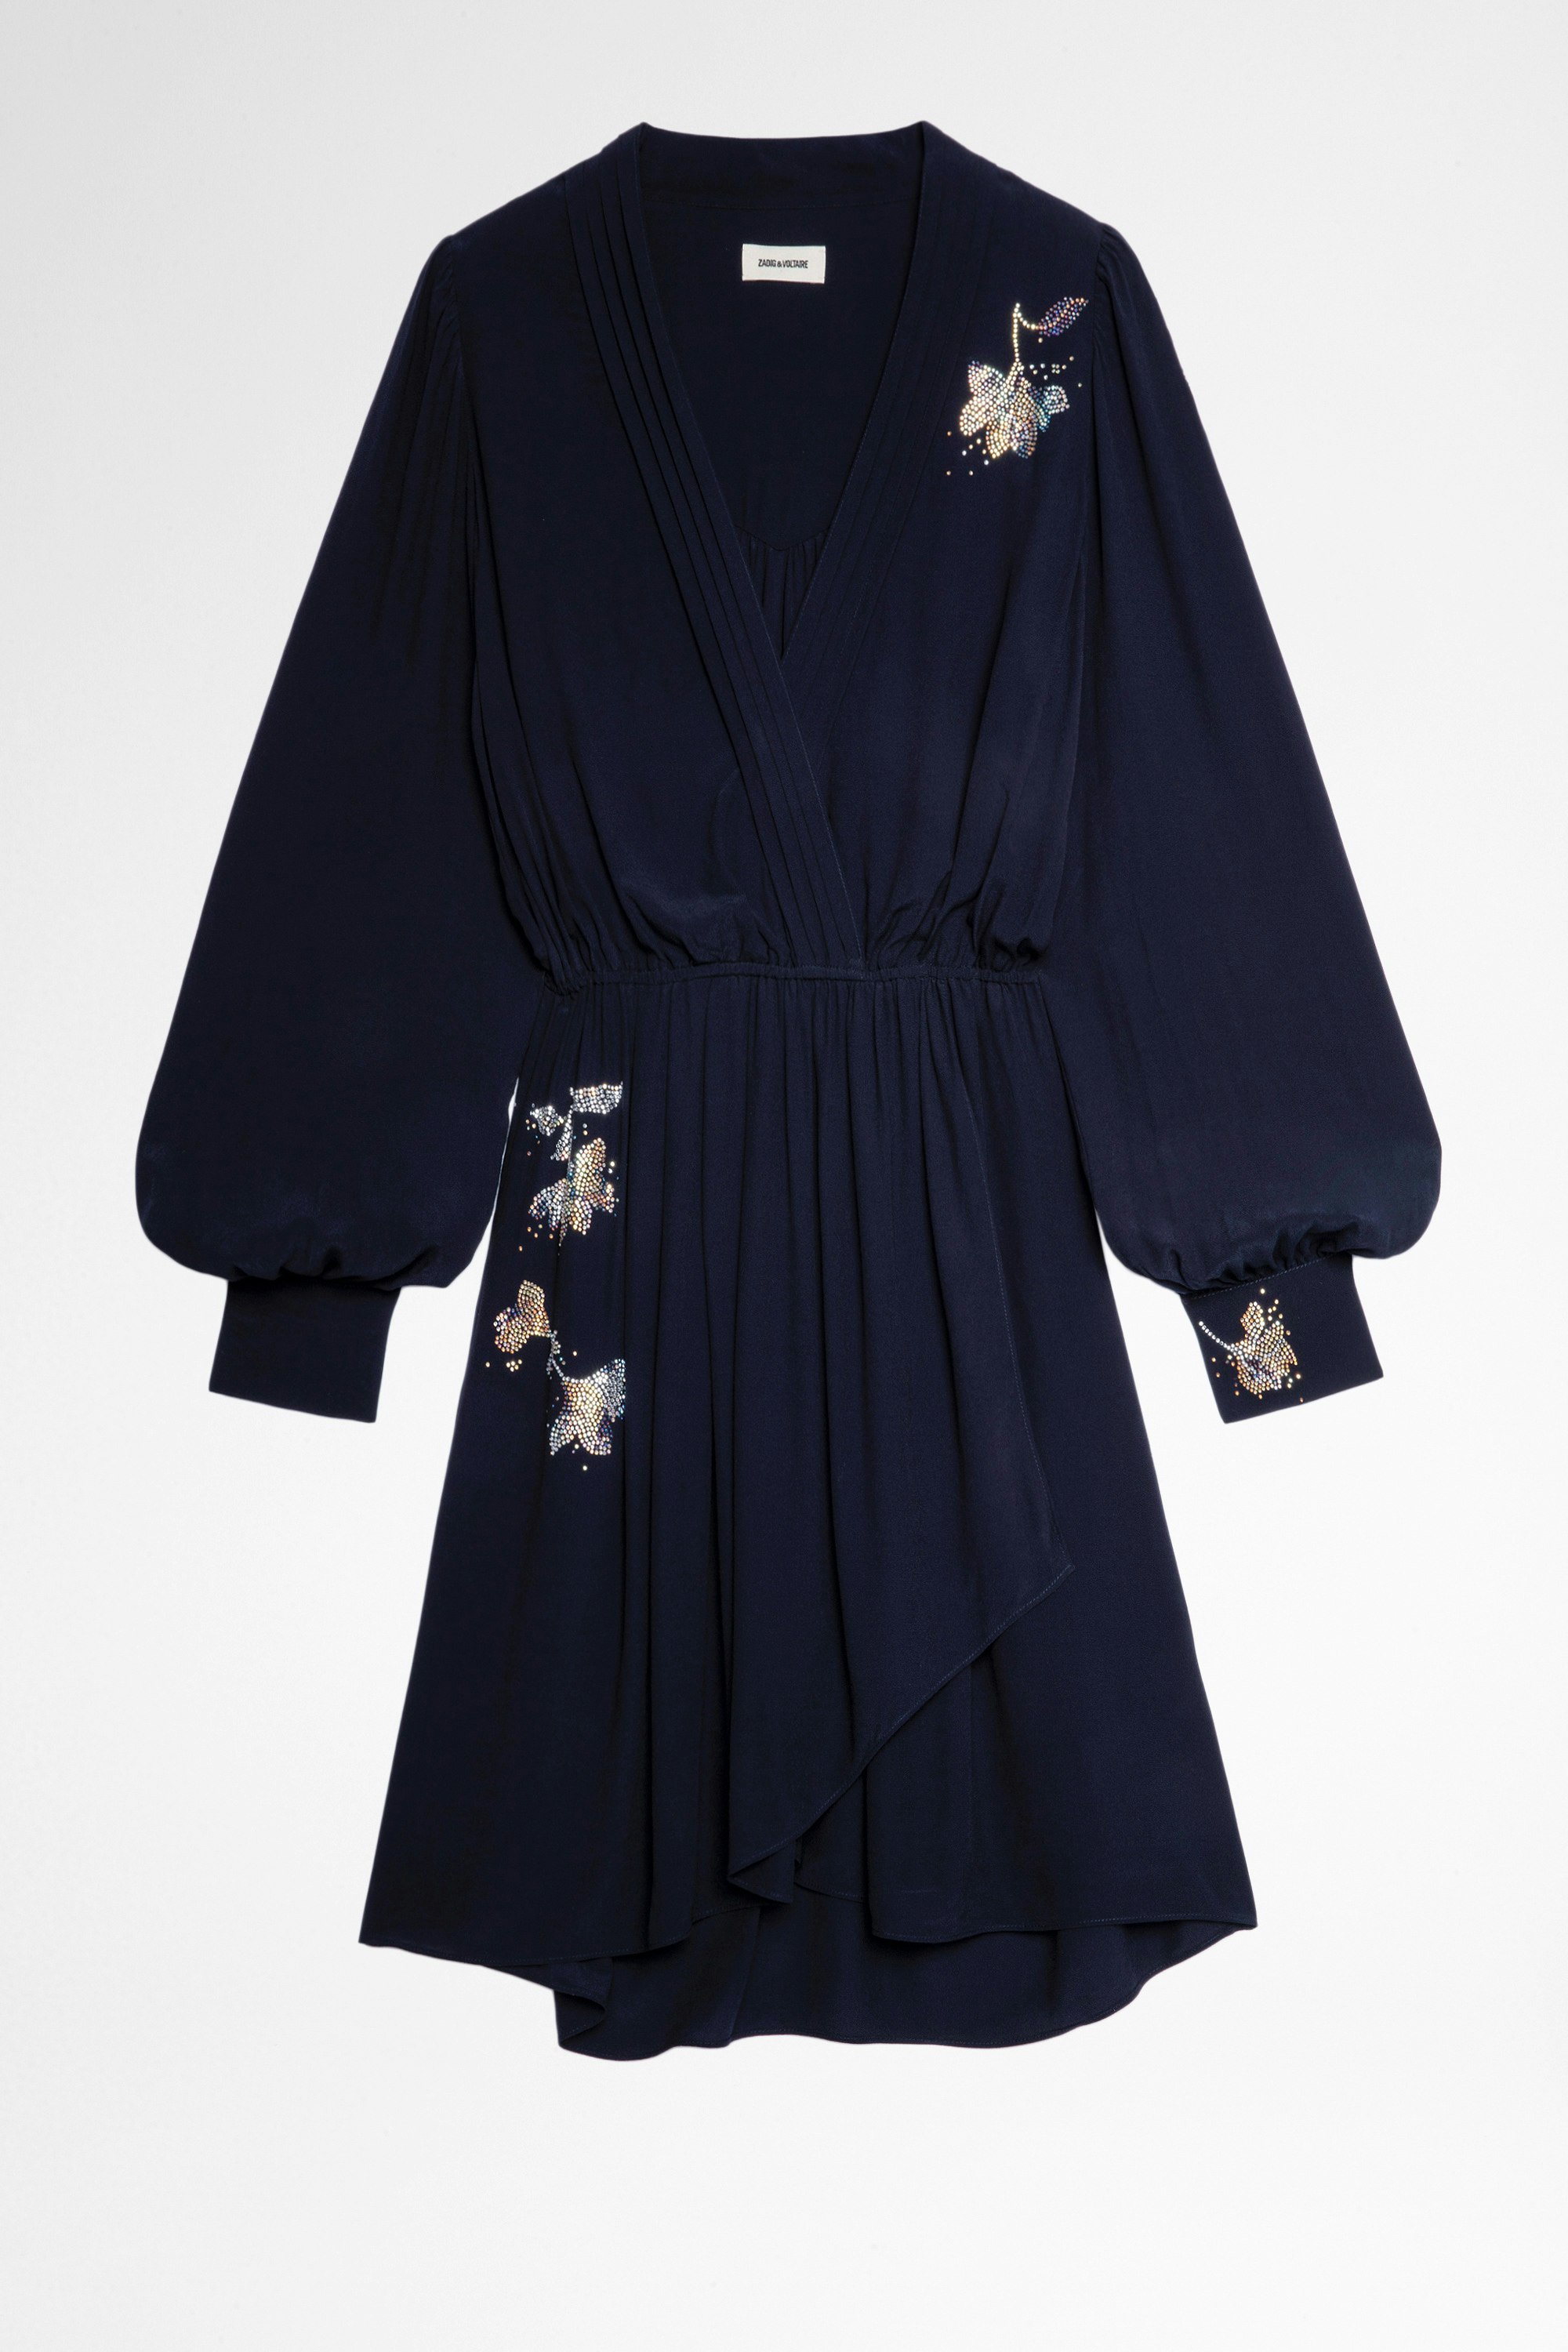 Kleid Remember Strass Marineblaues, kurzes Damenkleid mit Kristallen. Hergestellt mit Fasern aus nachhaltig bewirtschafteten Wäldern